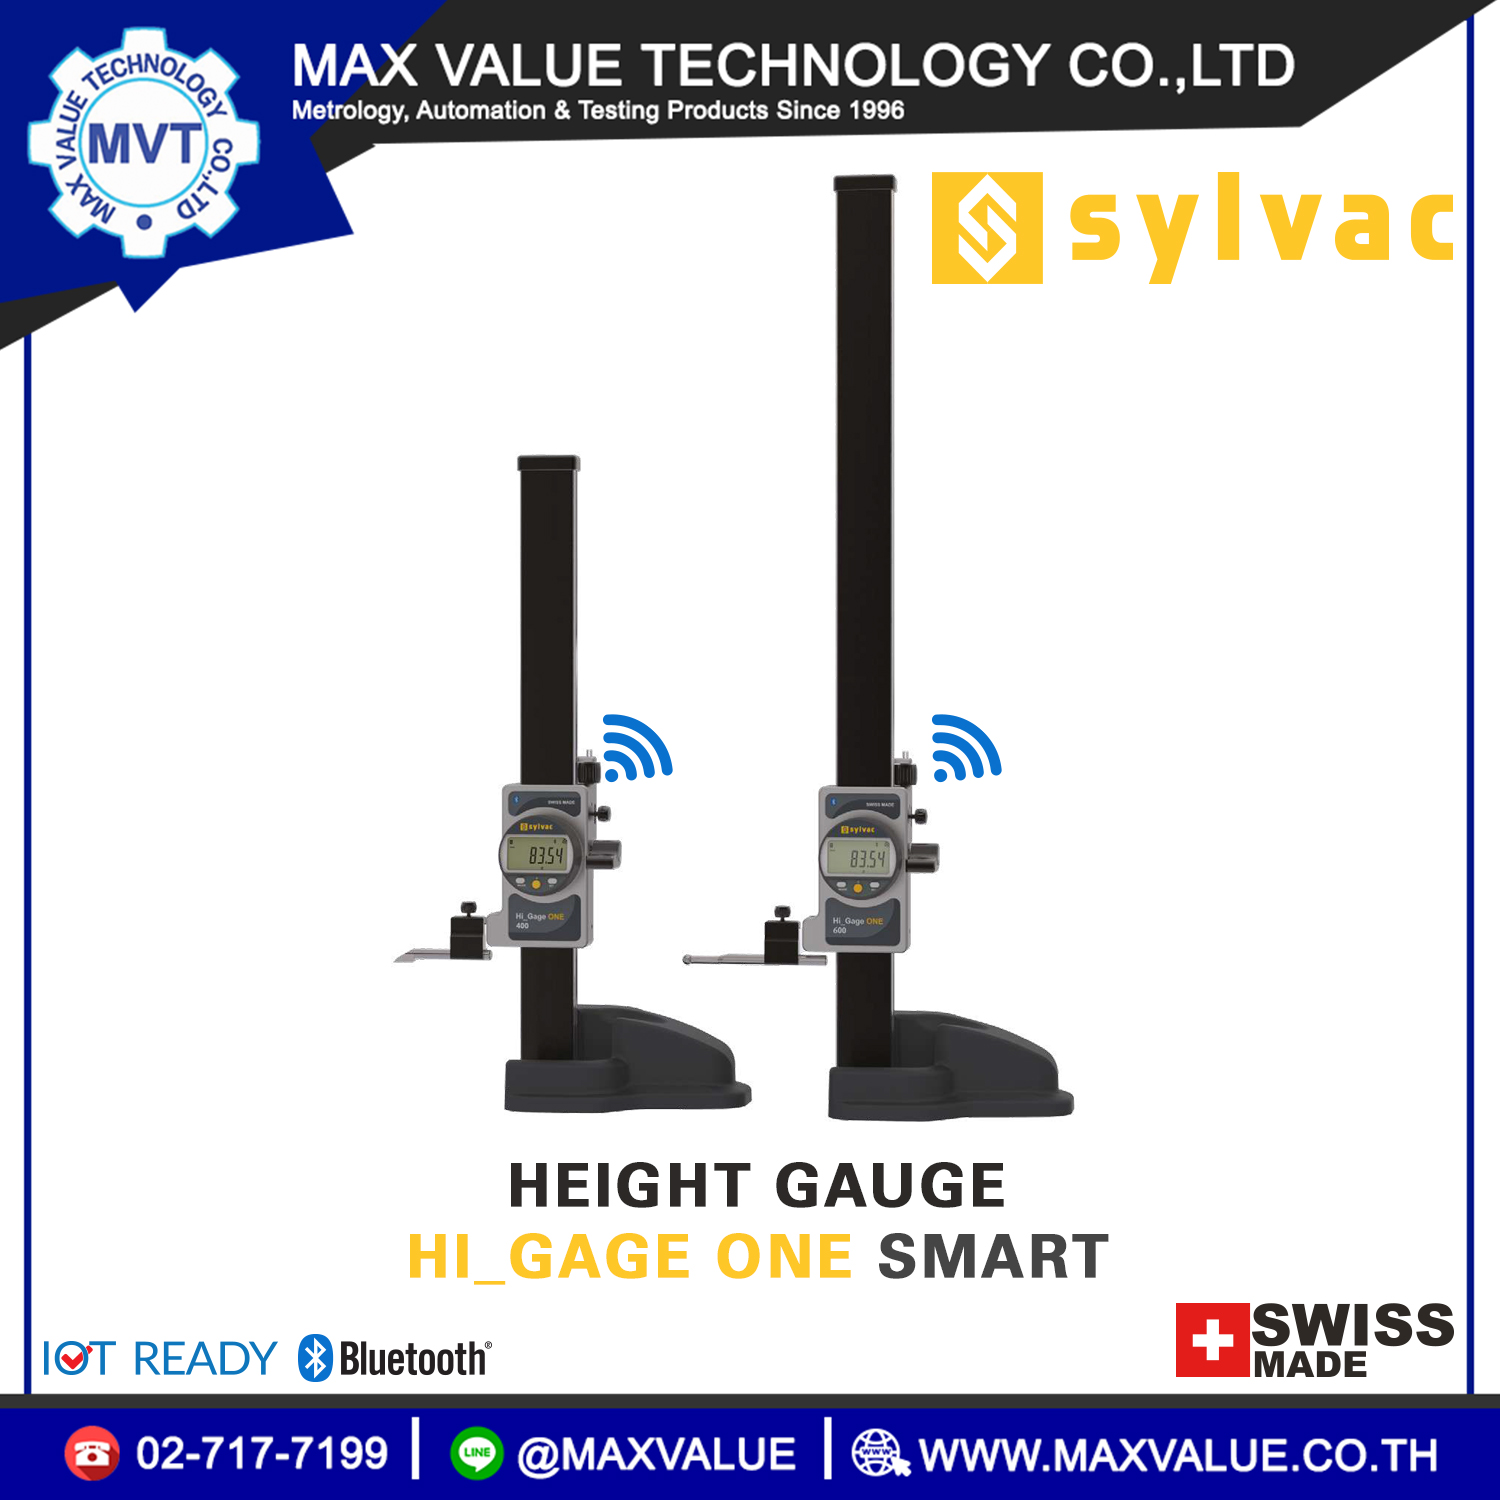 Height gauge Hi_Gage ONE Smart